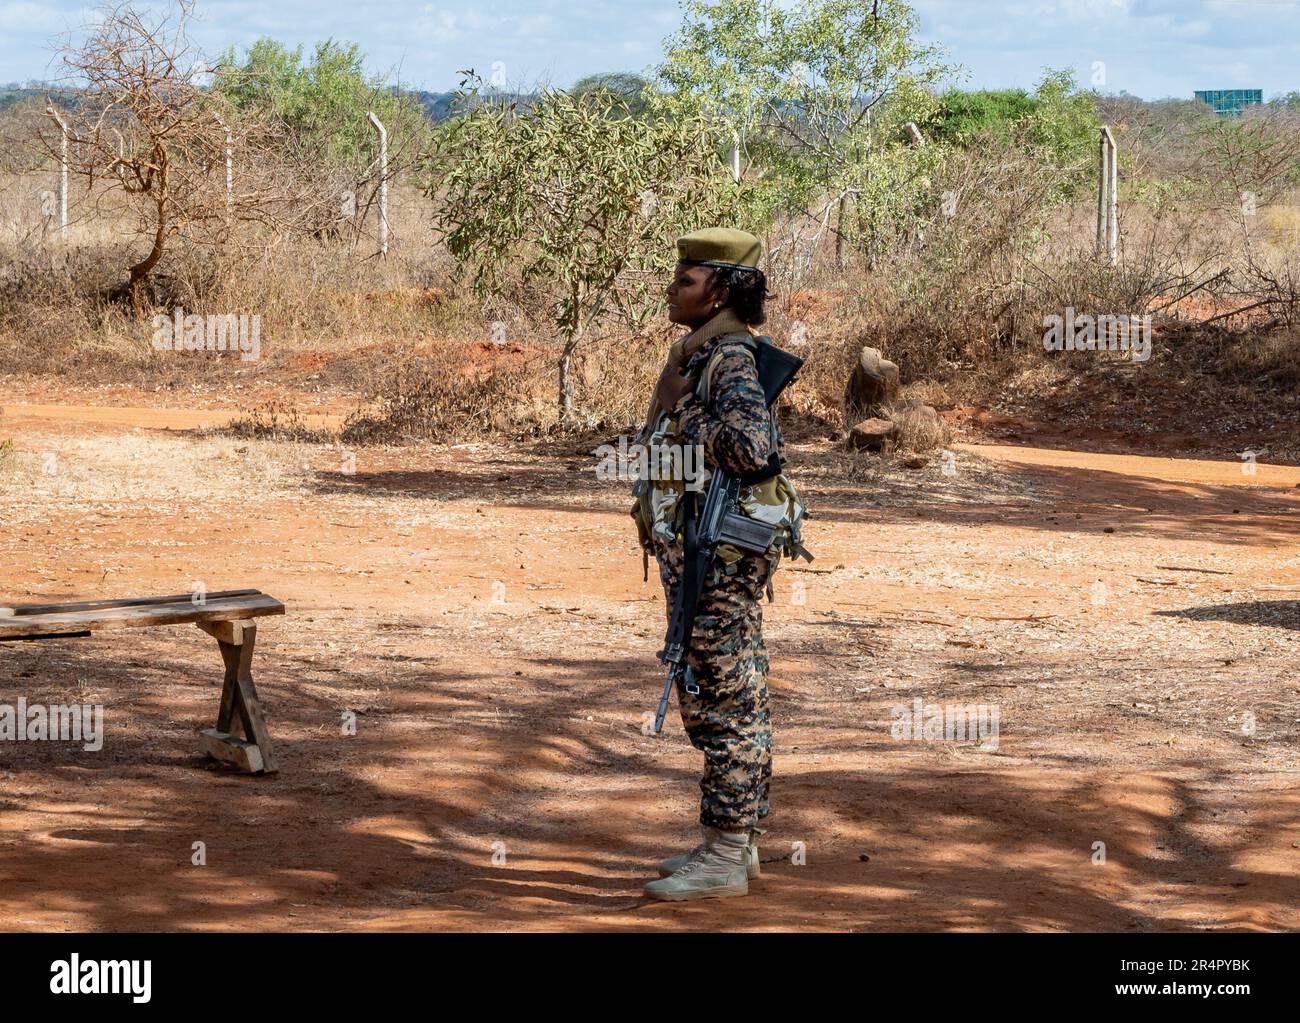 Eine Park Ranger-Frau mit langen Waffen bewacht die Tierwelt vor Wilderei in einem Nationalpark. Kenia, Afrika. Stockfoto